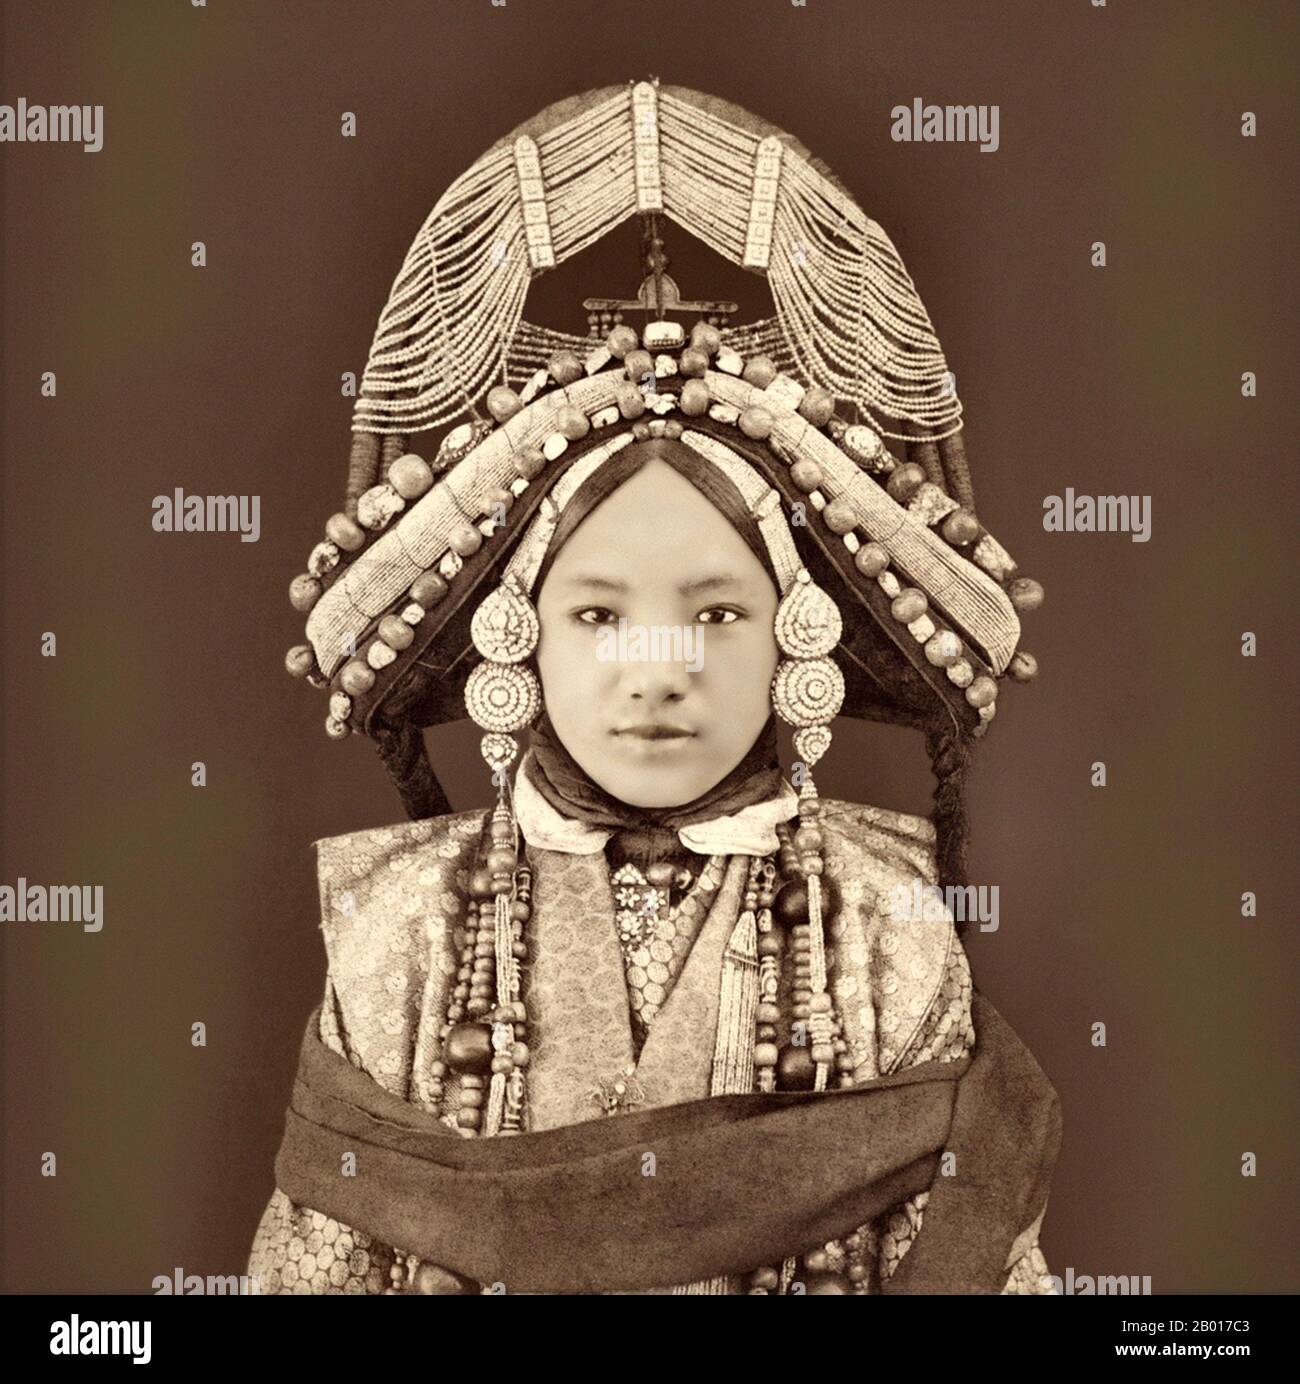 China/Tibet: Eine tibetische Lhacham oder Prinzessin in traditioneller Kleidung von Sarat Chandra das (18 Jule 1849 - 5. Januar 1917), c. 1879. Ein frühes Foto von Sarat Chandra das einer tibetischen Prinzessin (Lhacham), die traditionelle Kleidung, schweren Schmuck und einen sehr aufwendigen Kopfschmuck trägt. Stockfoto